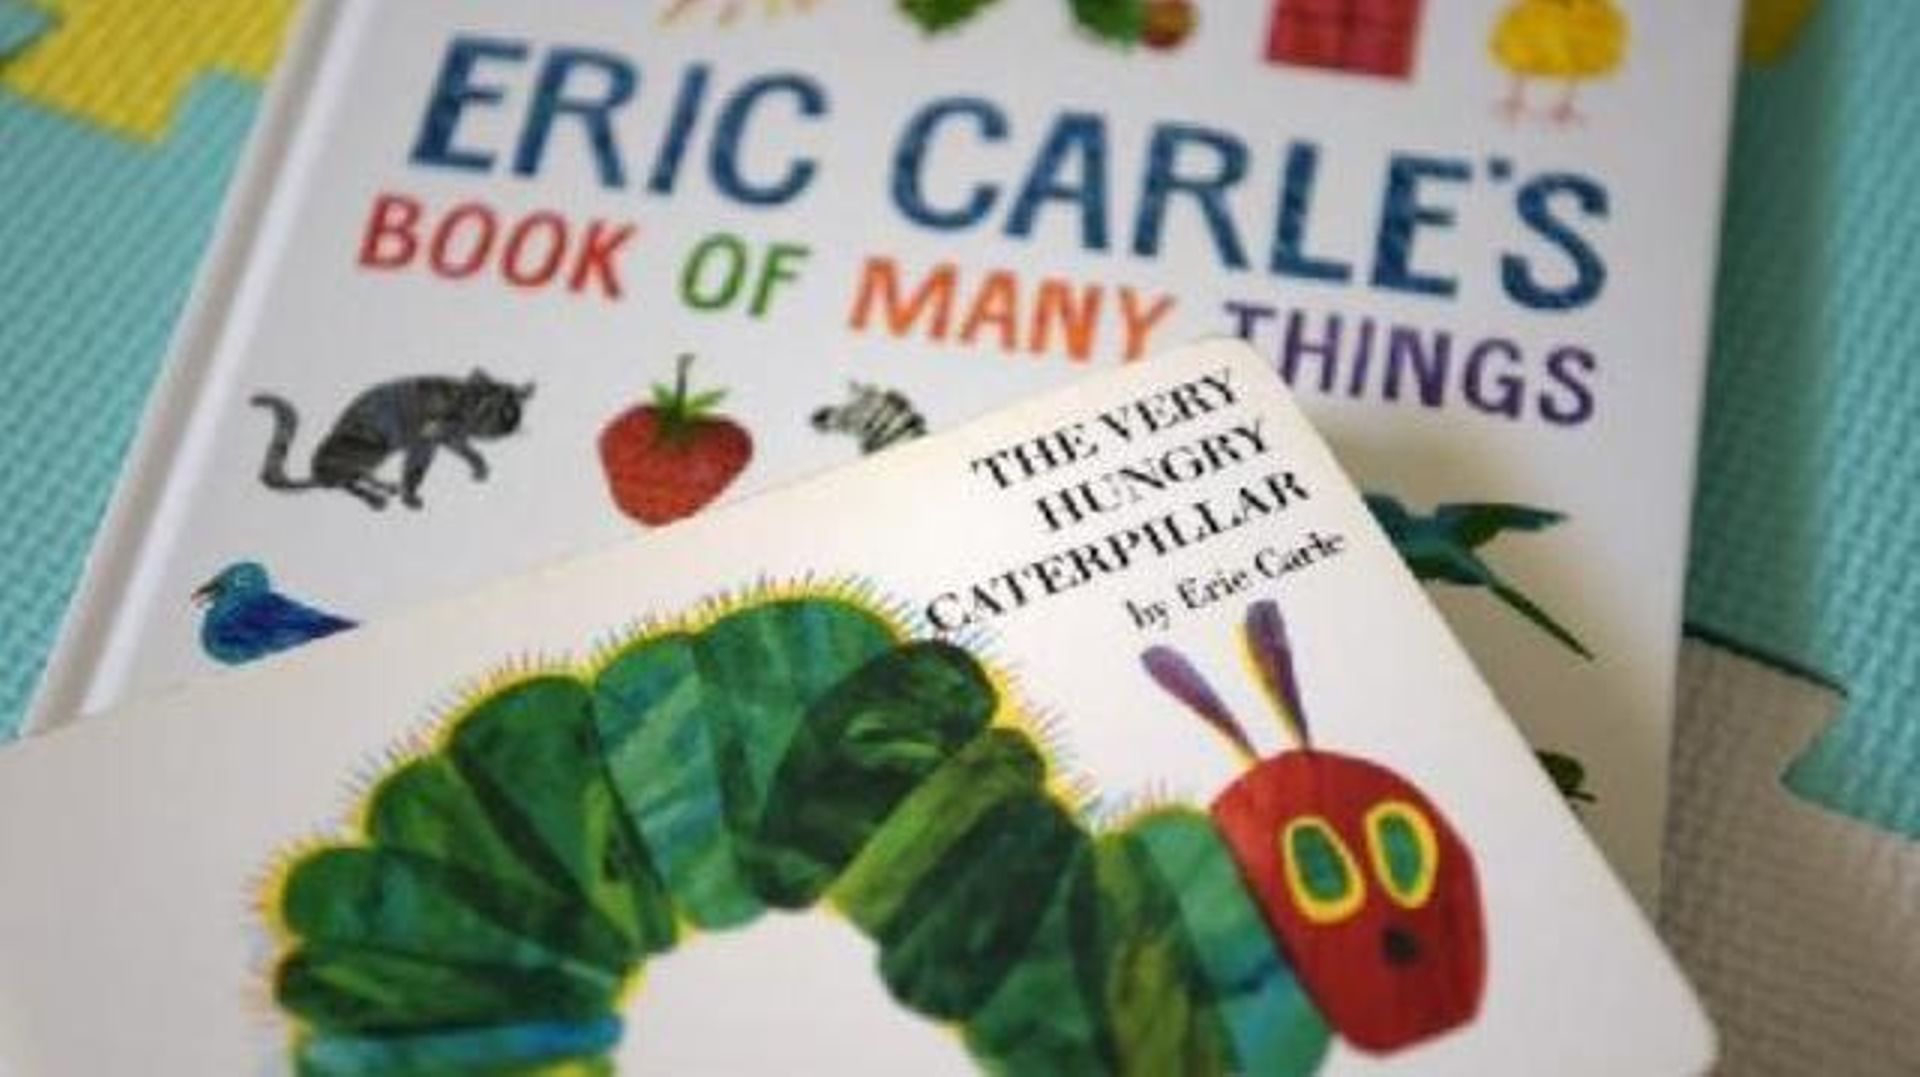 Décès d’Eric Carle, l’auteur et illustrateur de "La chenille qui fait des trous"